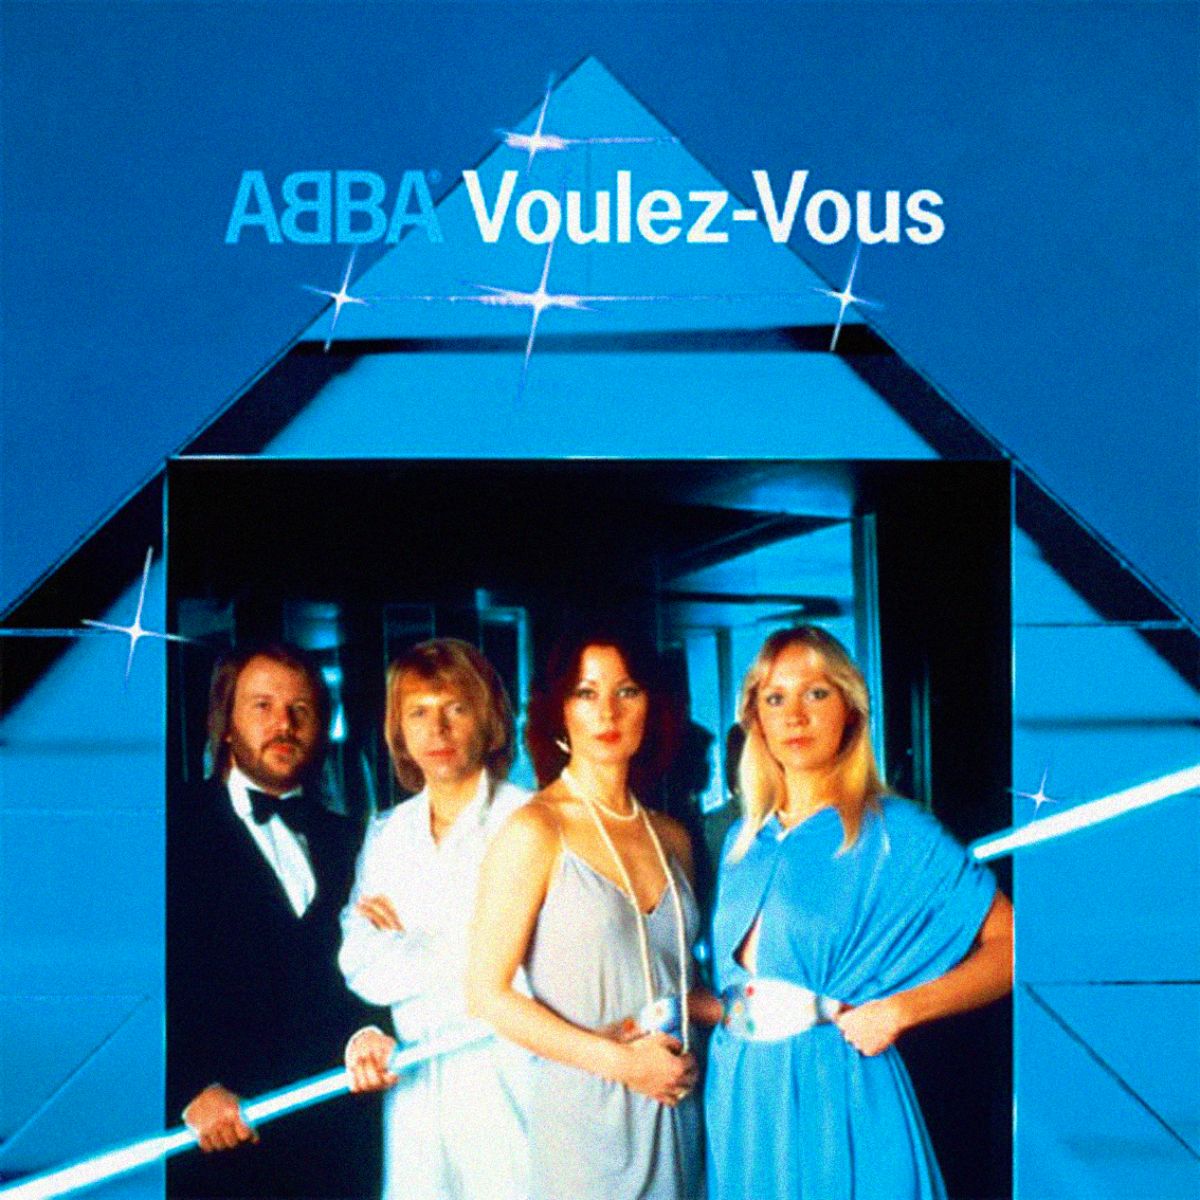 Voulez-Vous (ABBA album)